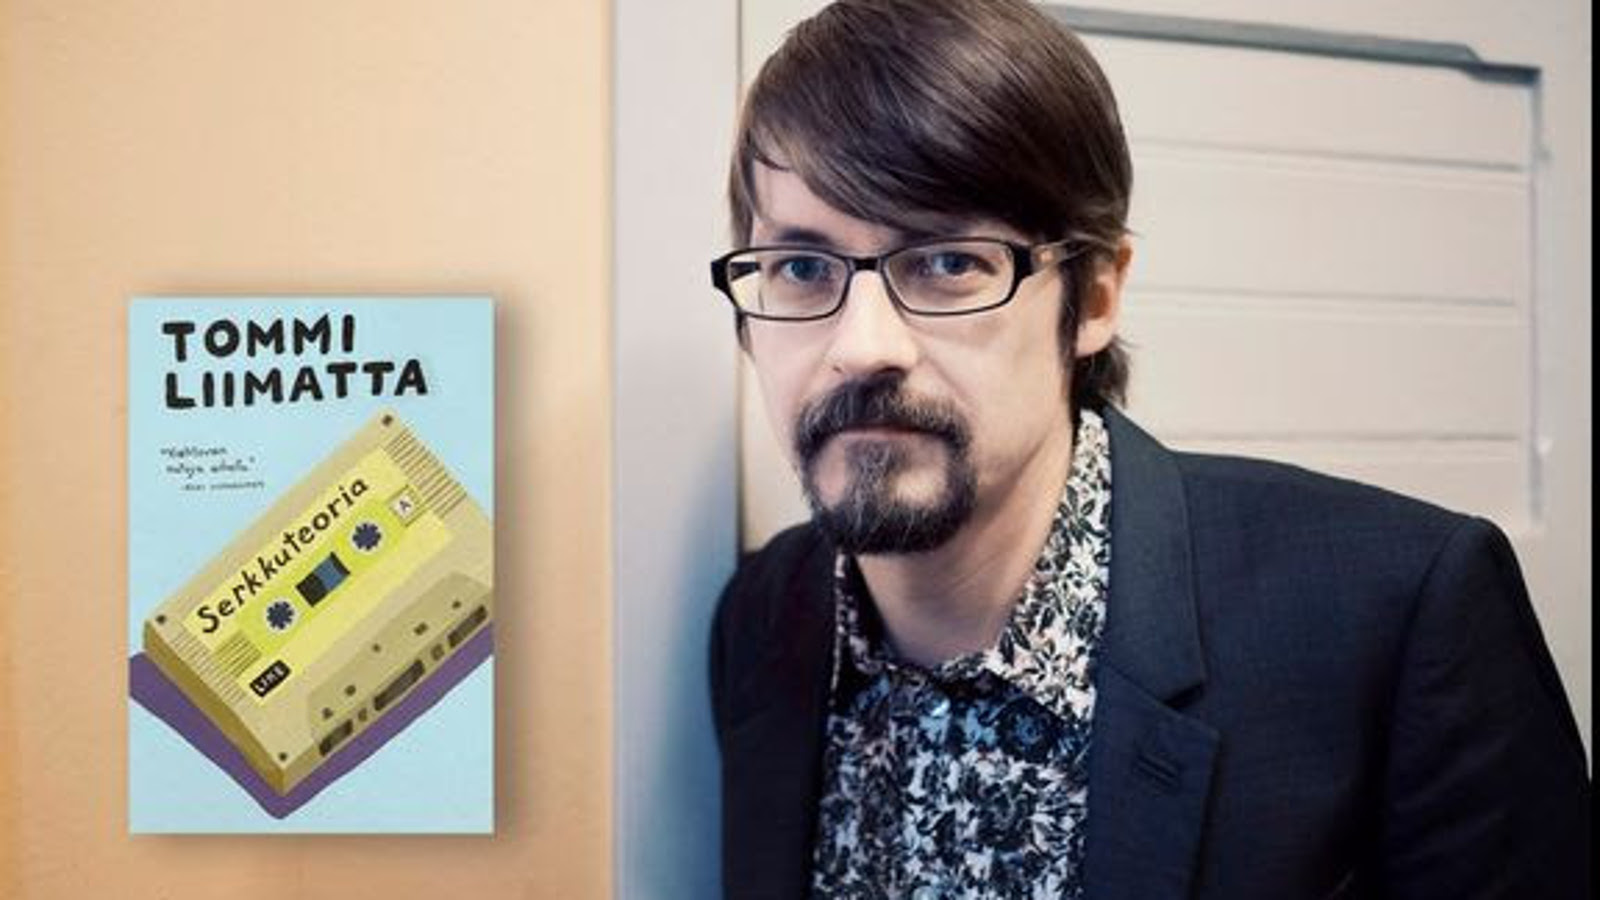 Kuvassa on oikealla Tommi Liimatta tumma reunaisissa silmälaseissa ja hänen taustanaan on valkoista tiiliseinää. Vasemmalla on kirjan kansi, jonka kannessa on keltainen kasetti ja siinä on kirjan nimi. 